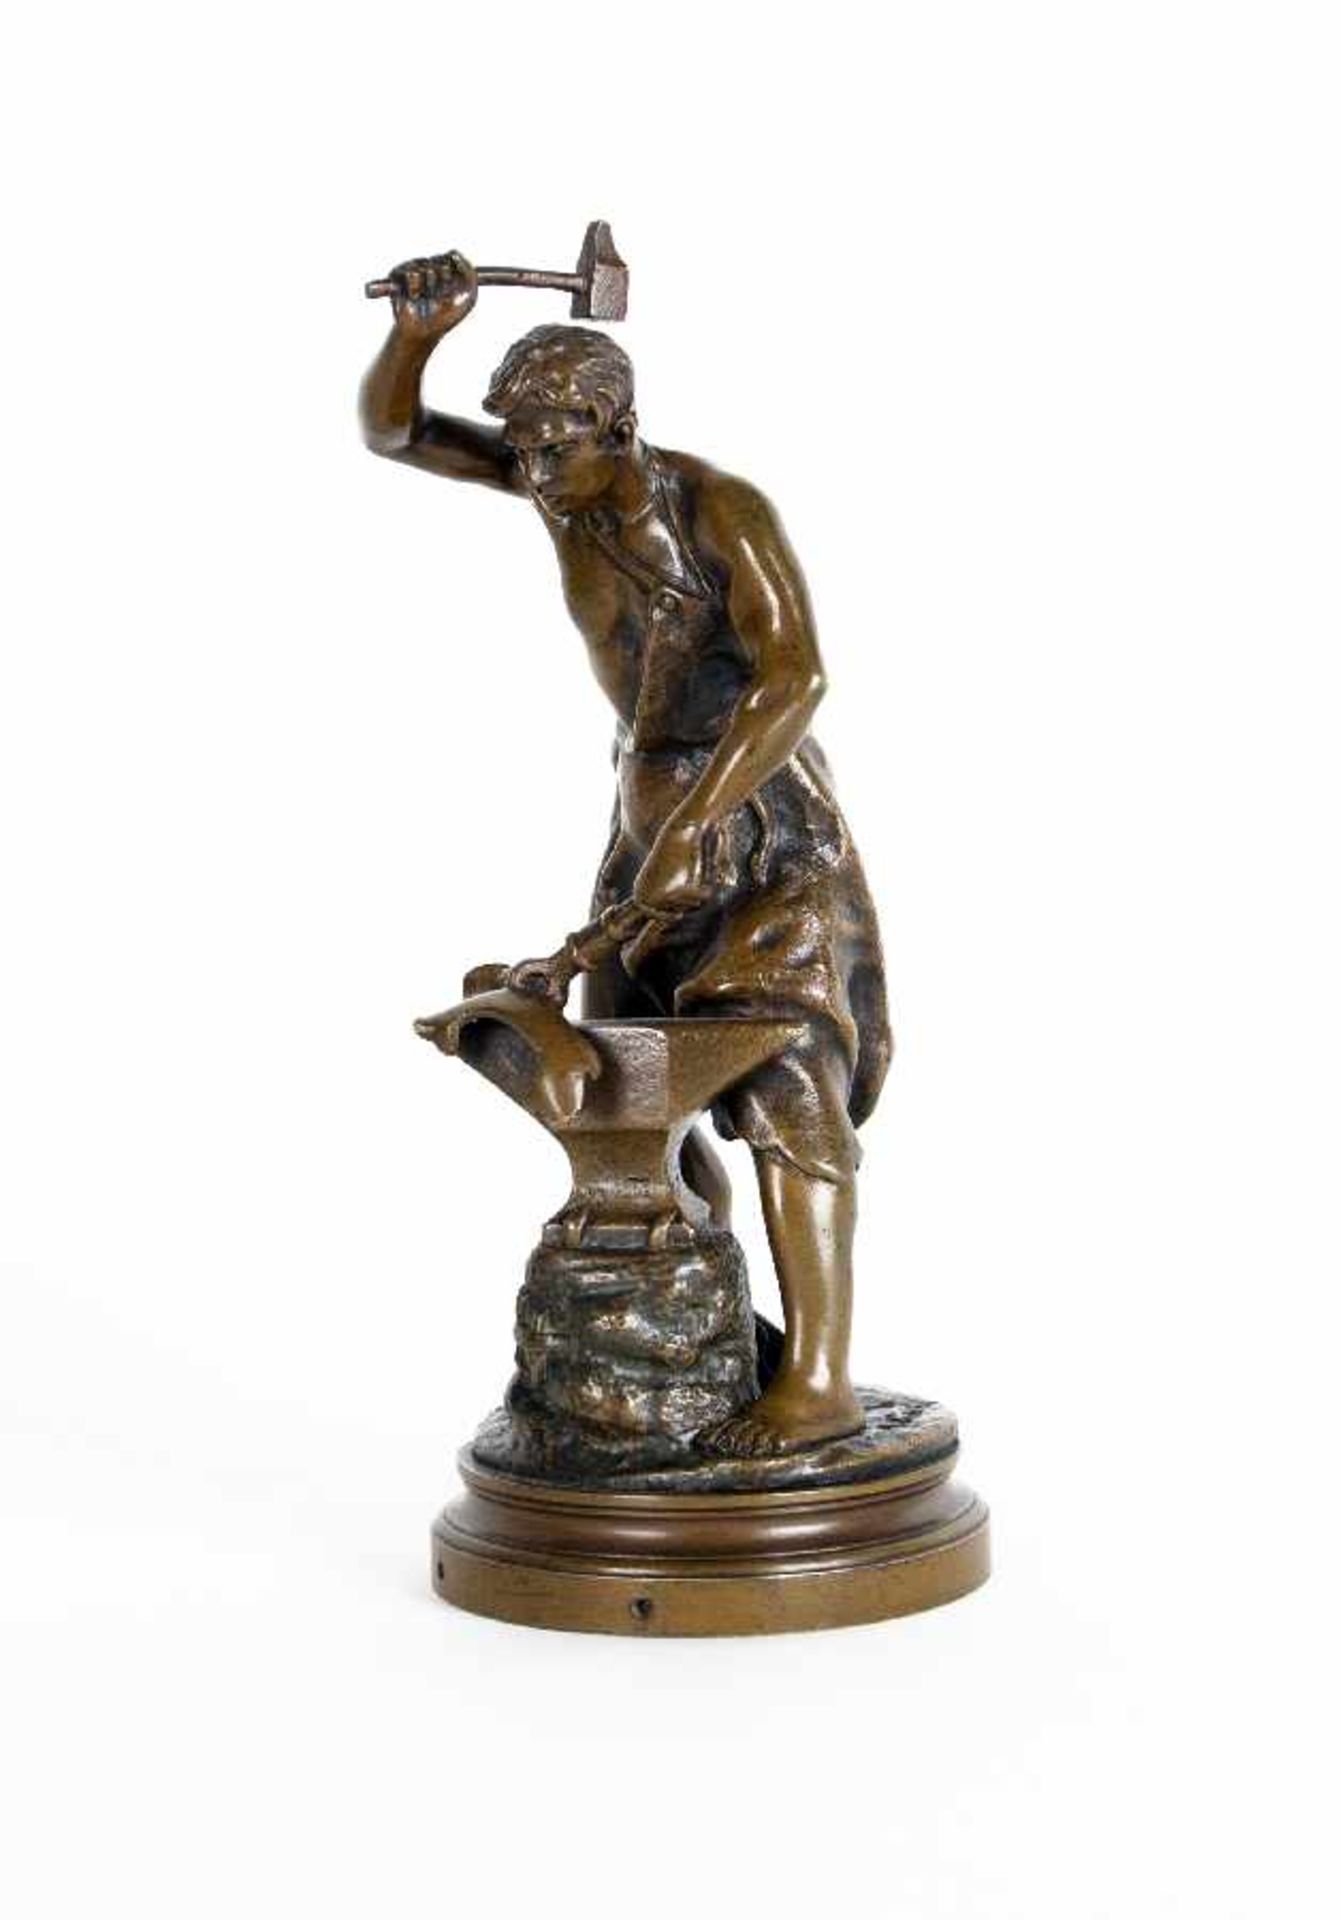 Adrien Etienne Gaudez1845 - 1902Der SchmiedBronze; H 20 cm; bezeichnet "A Gaudez"; unten nummeriert;